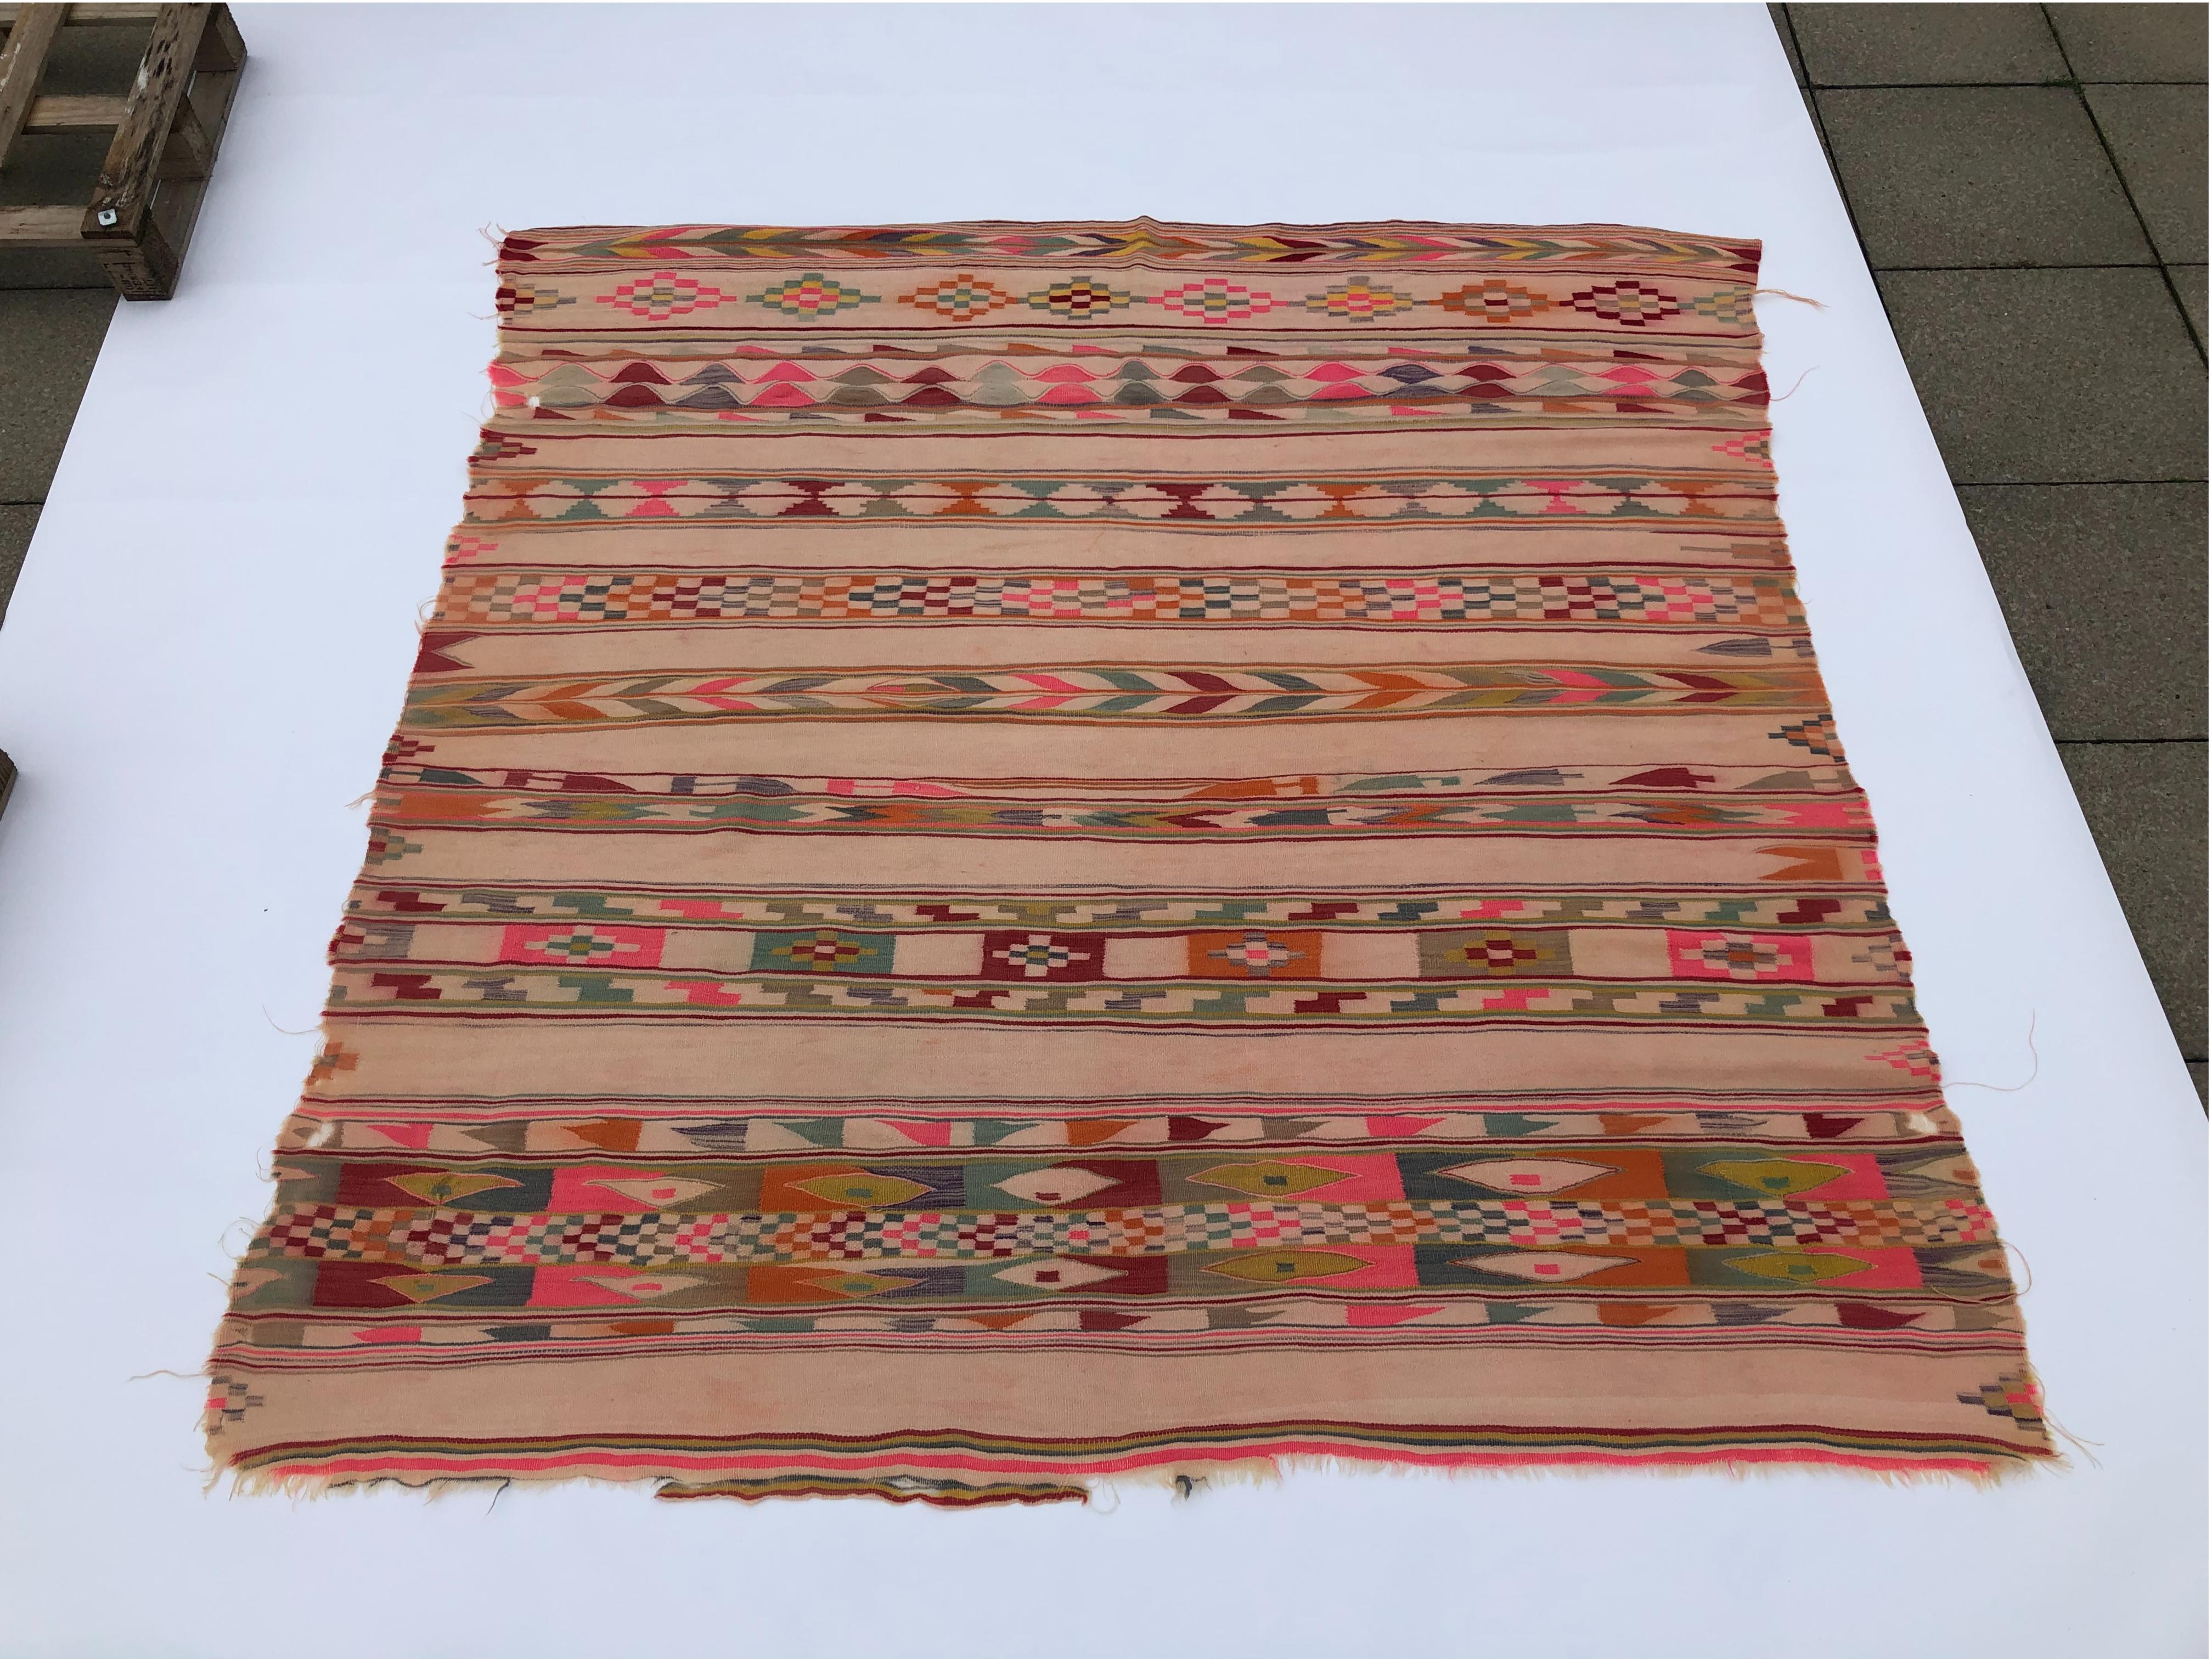 Entdecken Sie ein Stück Geschichte mit diesem alten Berberteppich aus Algerien aus den 1930er Jahren, der geometrische Stammesmuster in Gruppen von parallelen Linien zeigt.

Das dominante Neon-Pink, das verbrannte Orange, das Ziegelrot und die